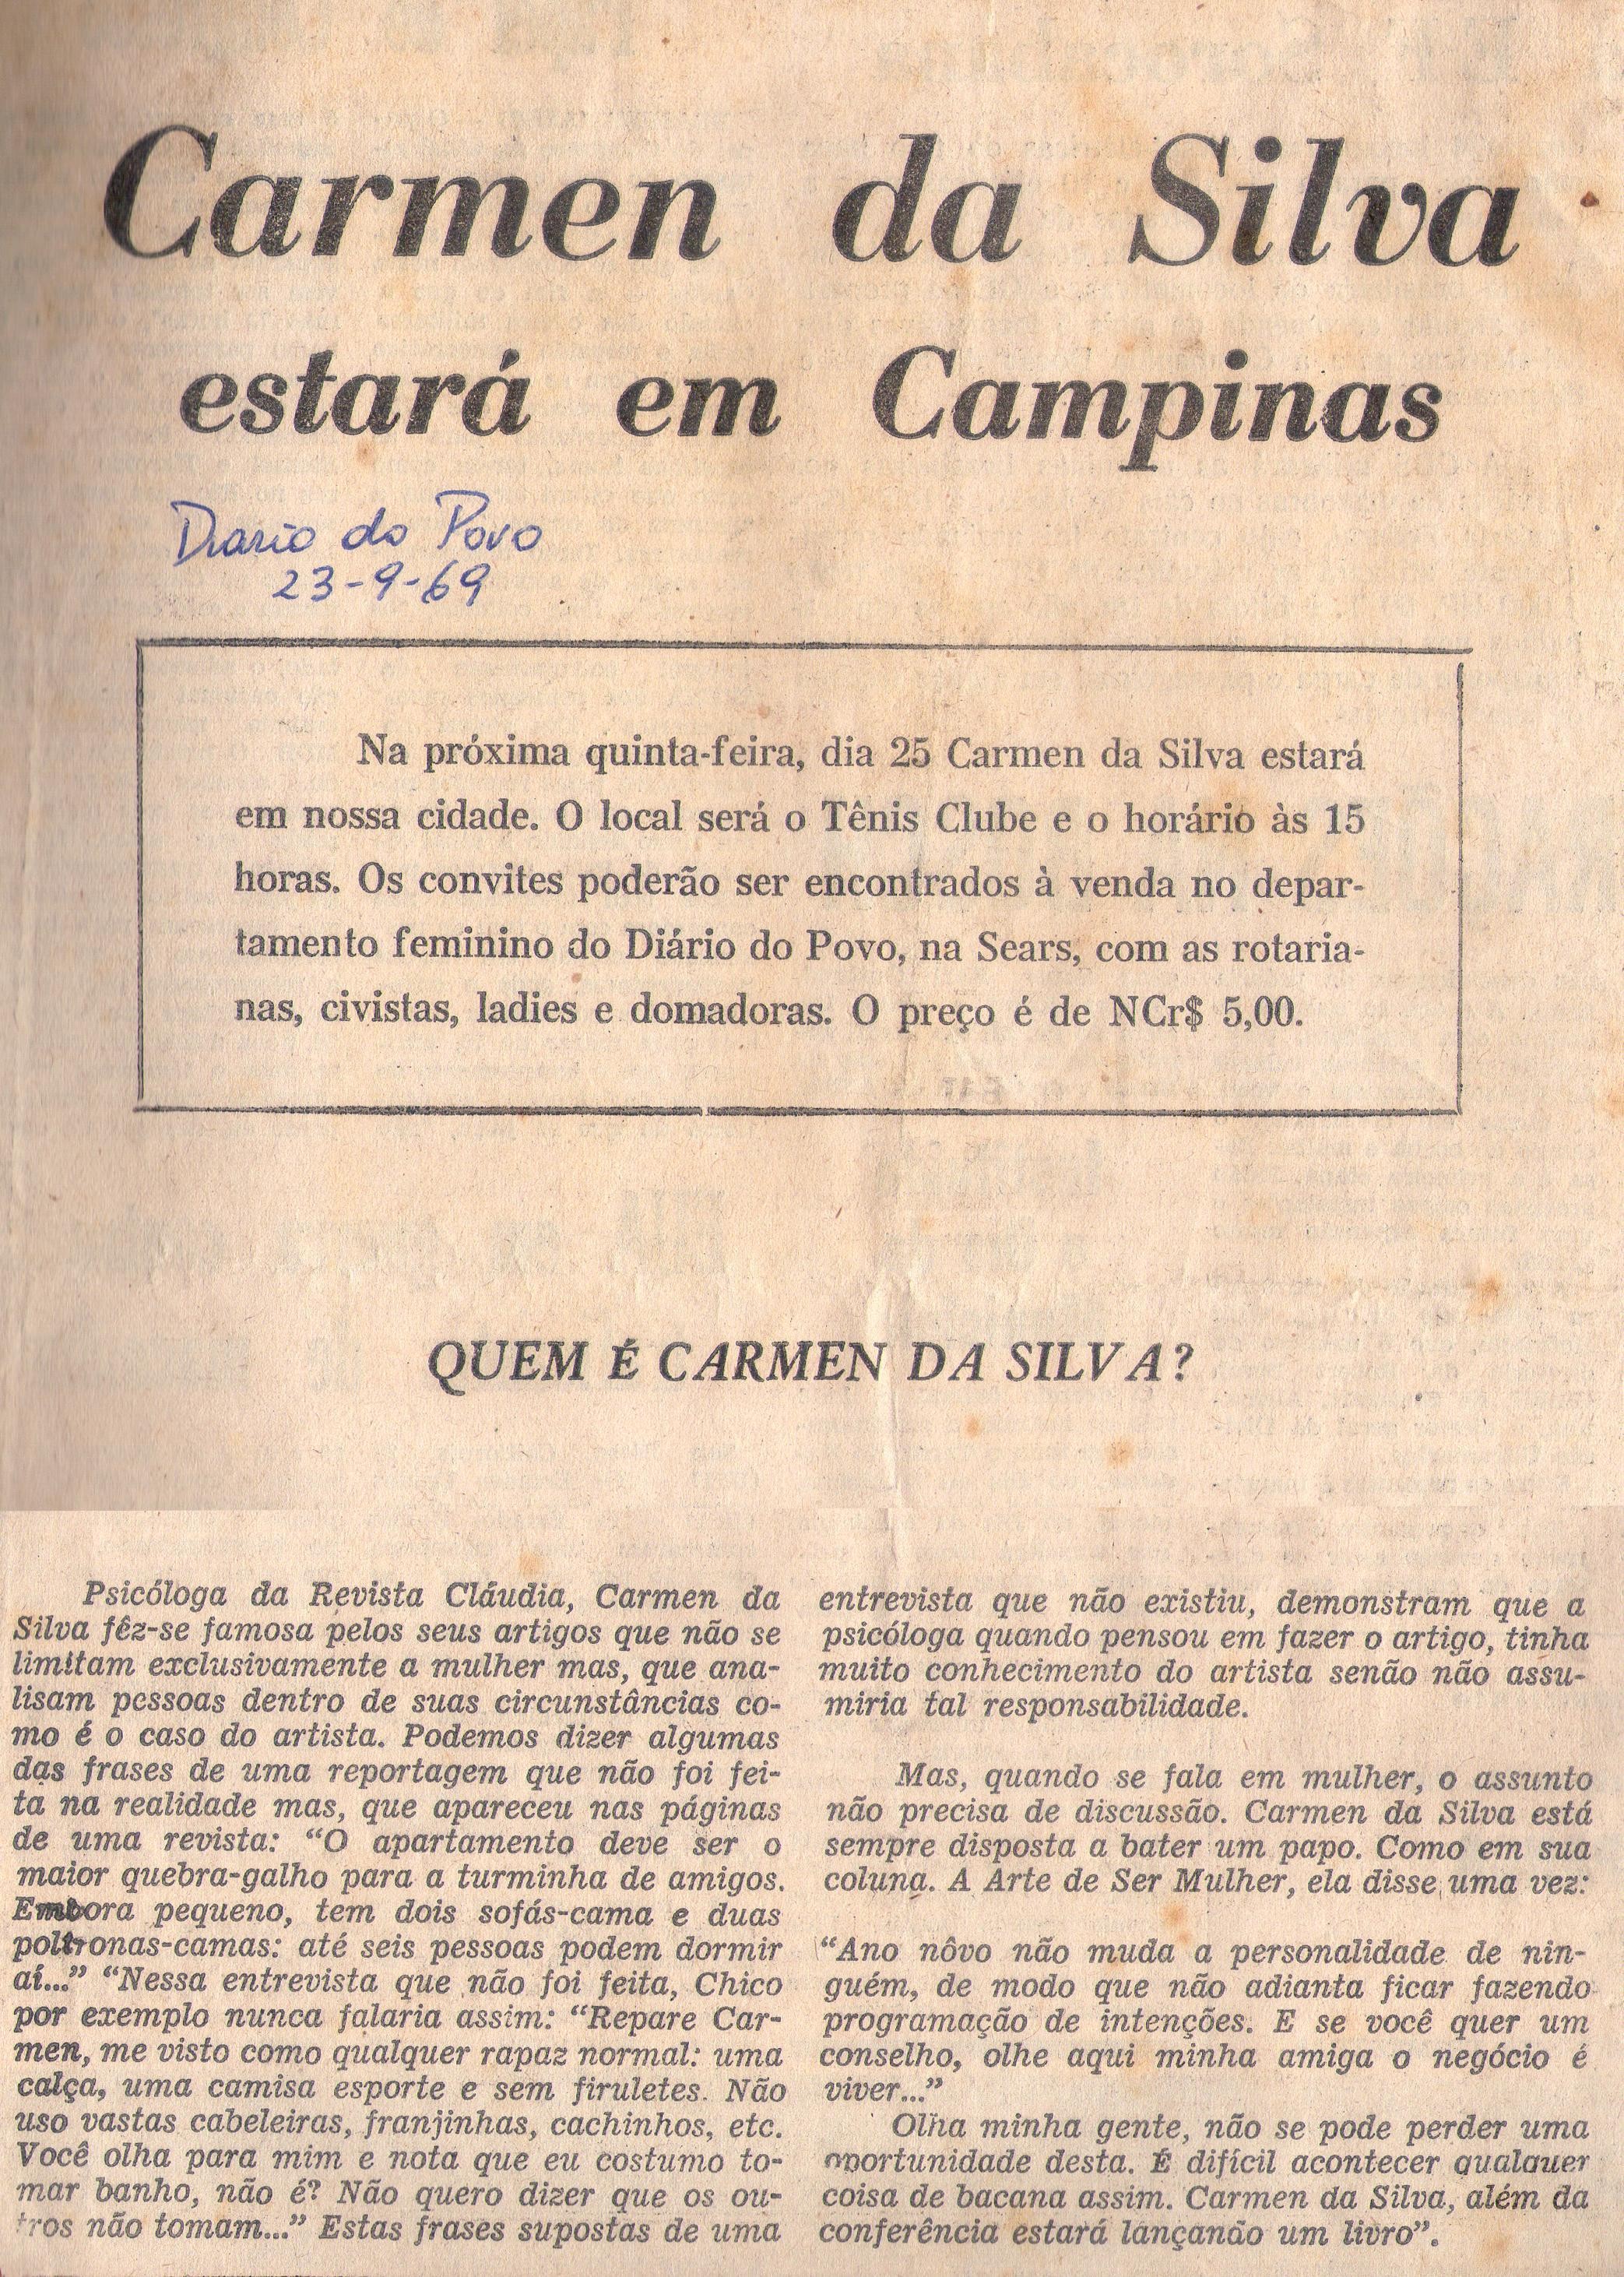 23 de Setembro de 1969 - Diário do Povo. Carmen da Silva estará em Campinas.